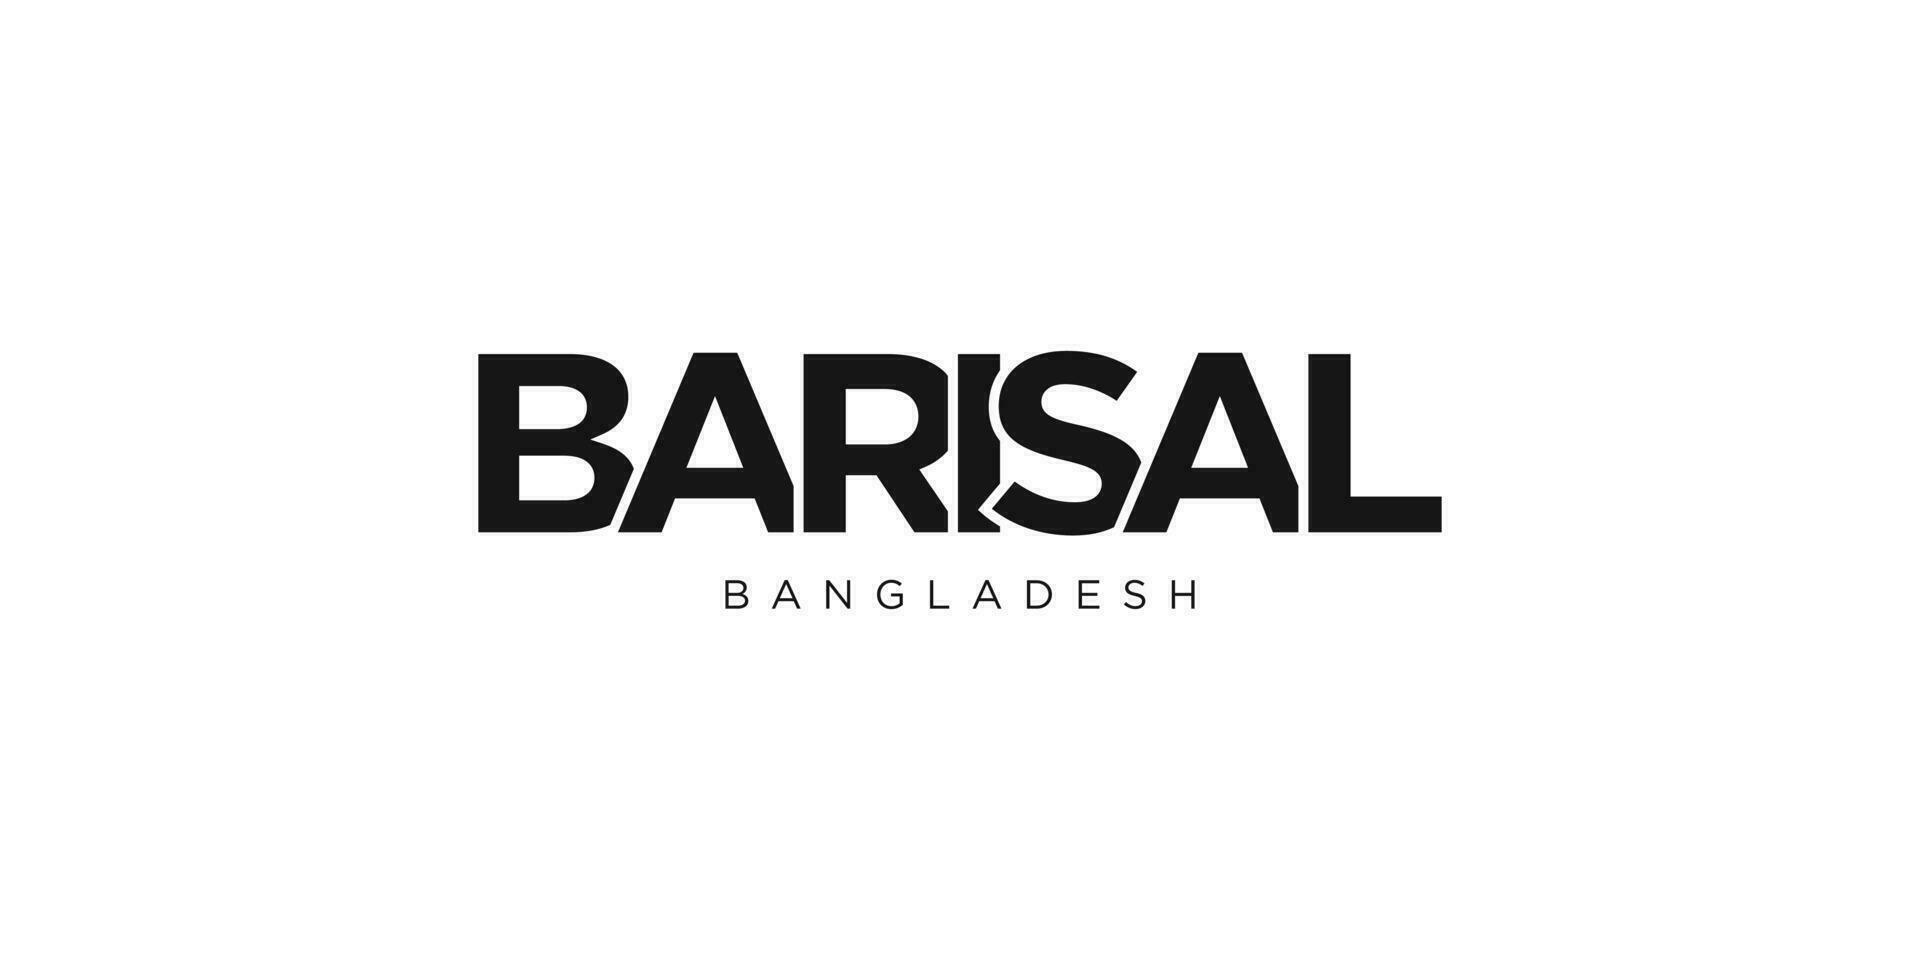 barisal dans le bangladesh emblème. le conception Caractéristiques une géométrique style, vecteur illustration avec audacieux typographie dans une moderne Police de caractère. le graphique slogan caractères.